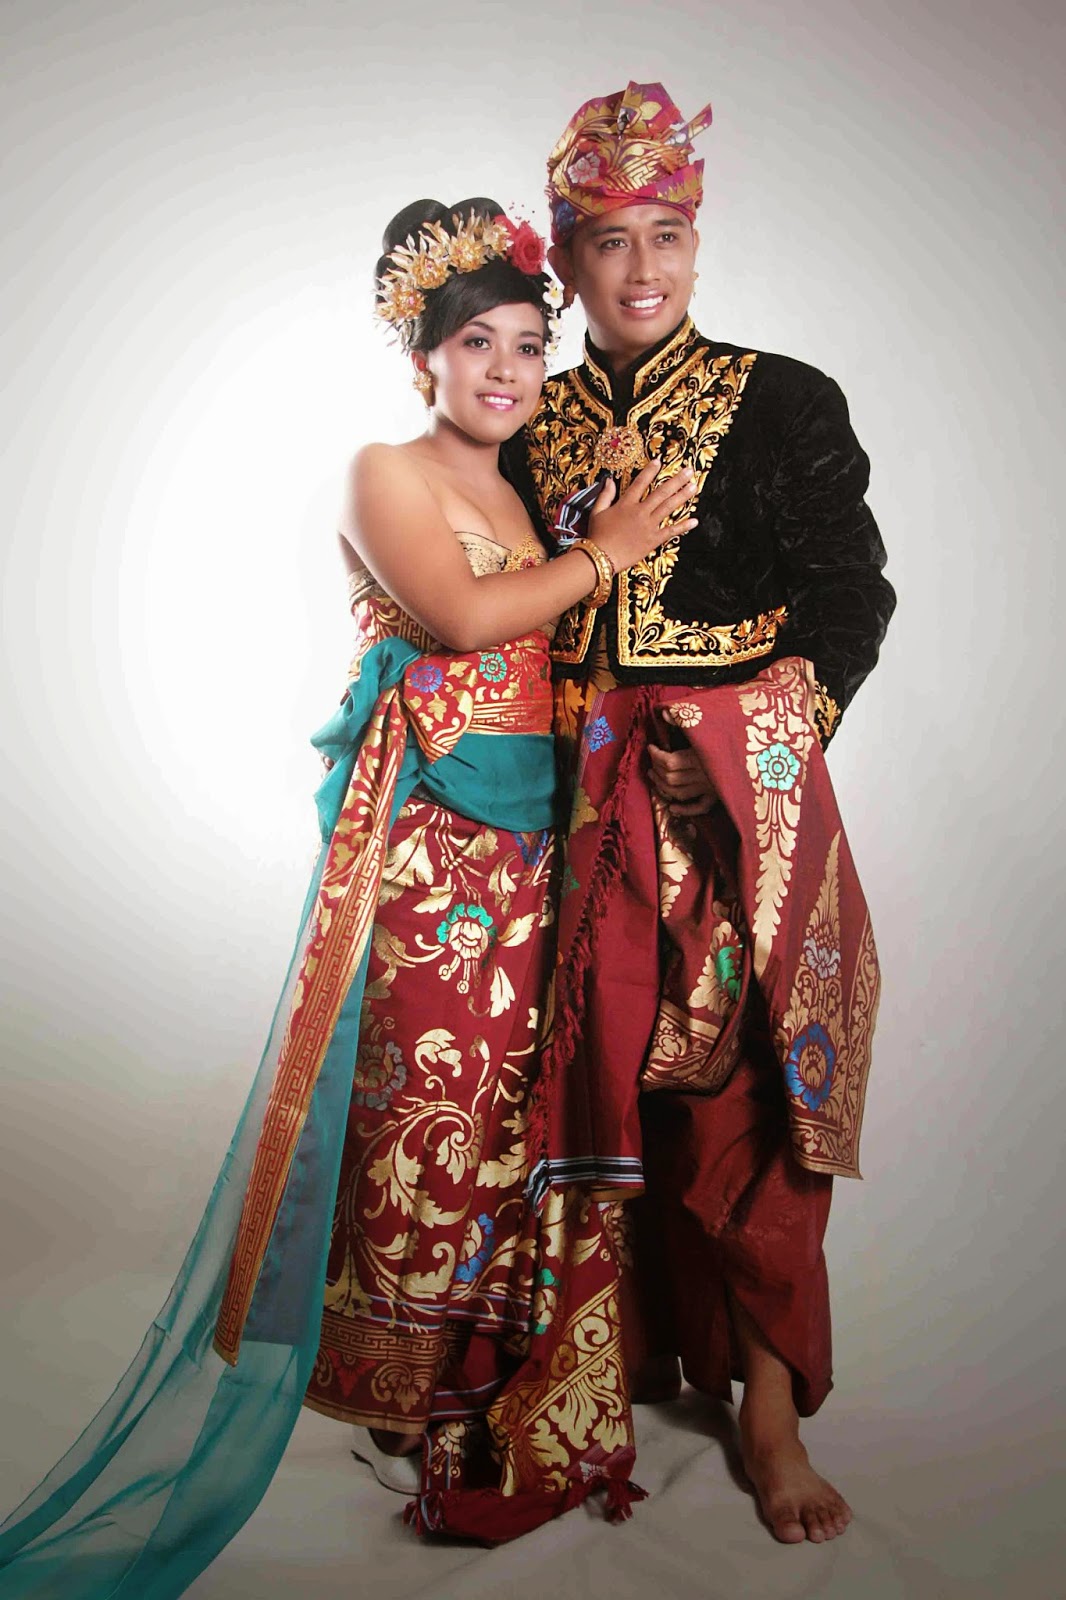 Baju Adat Orang Bali Baju Adat Tradisional Images